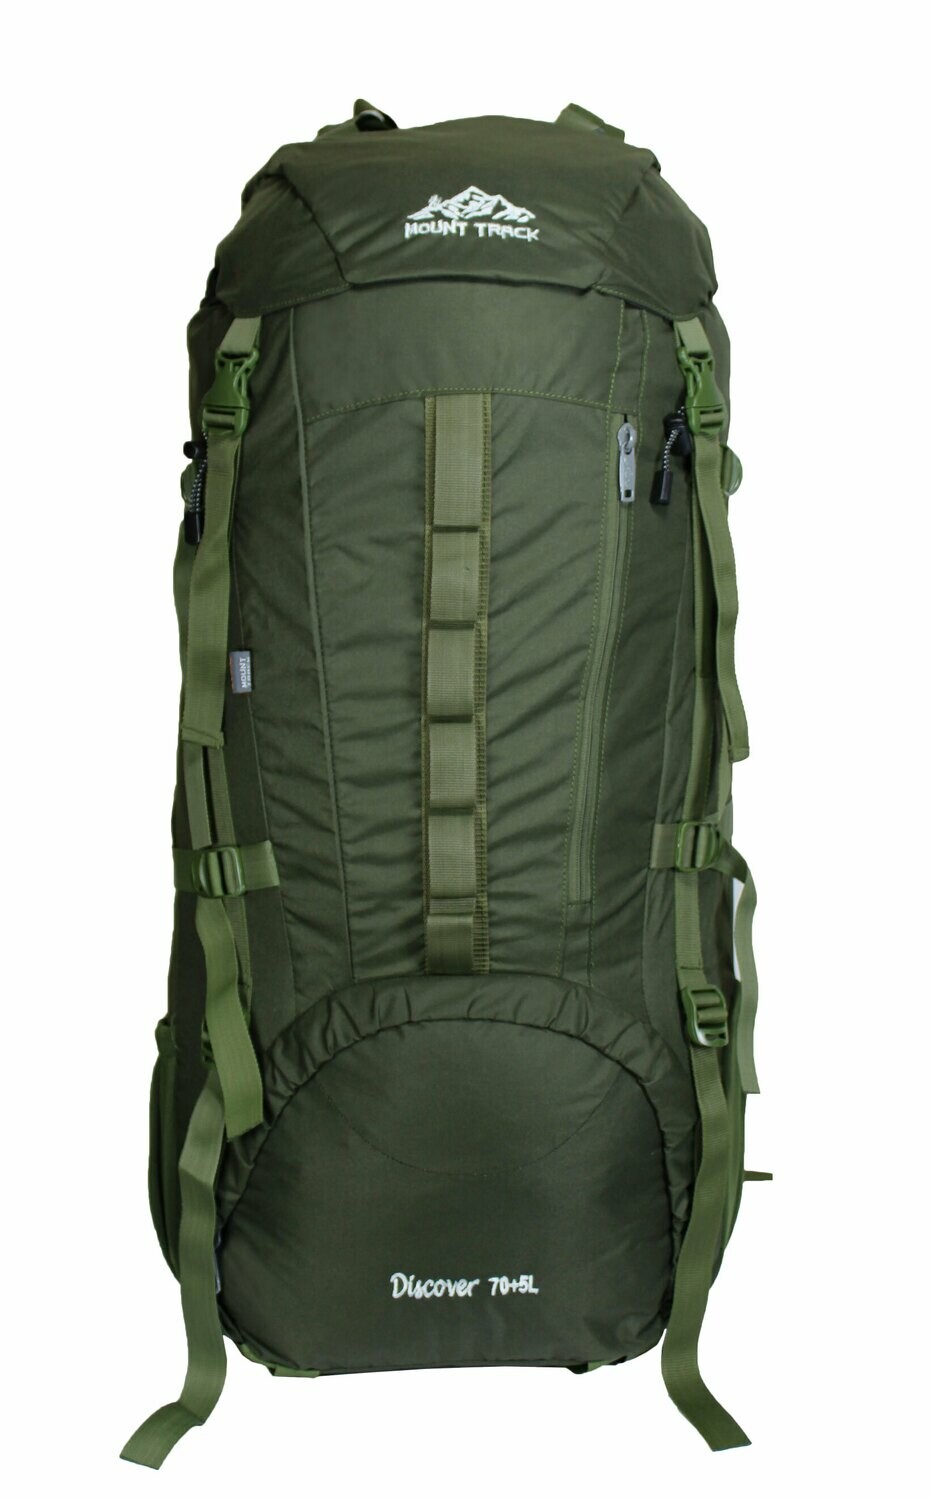 Mount Track Discover 9107 rucksack, hiking Backpack 75 Liter